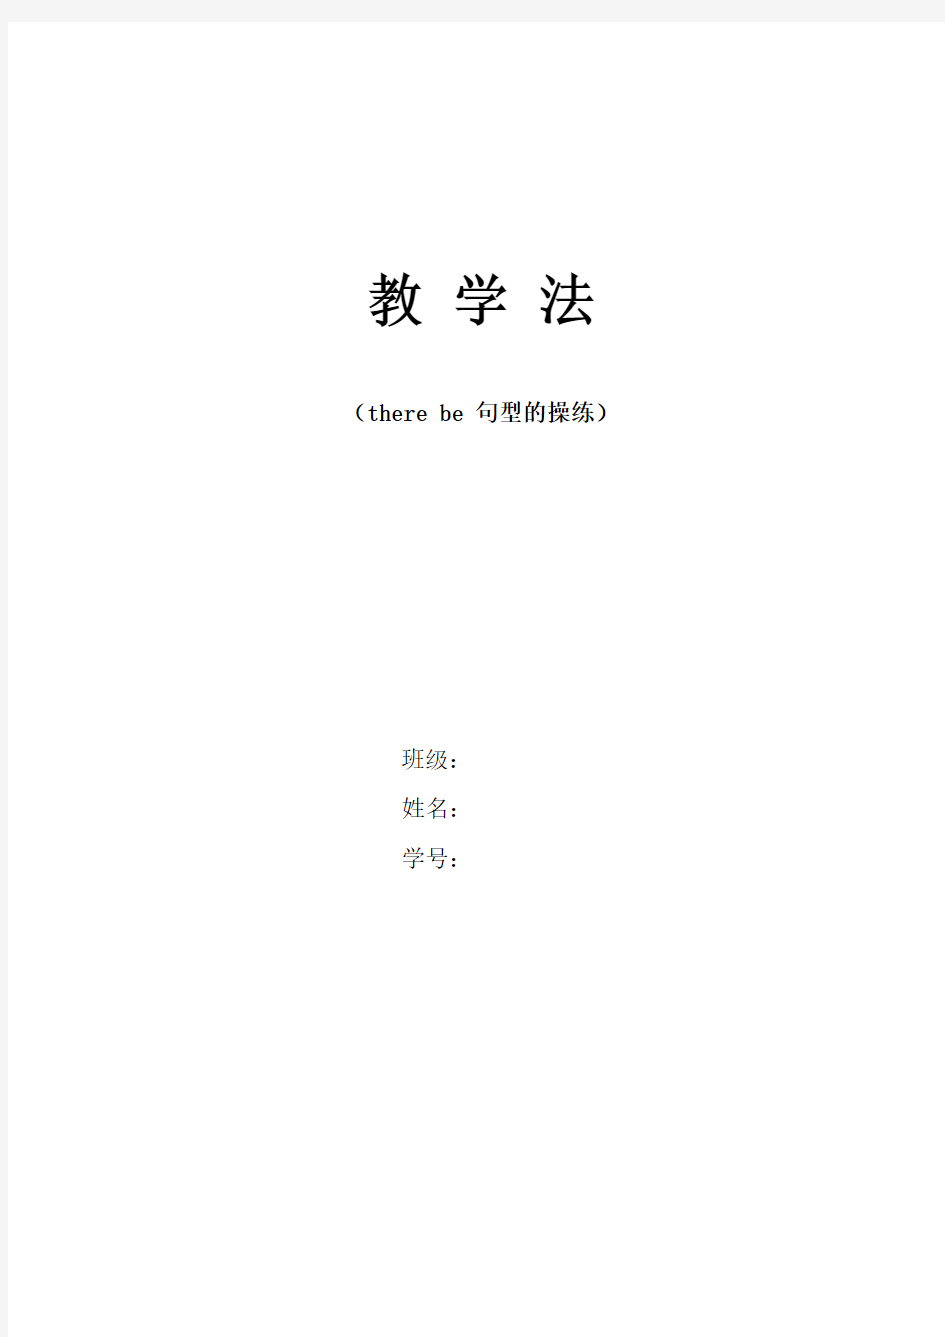 教学法(there are be 句型)